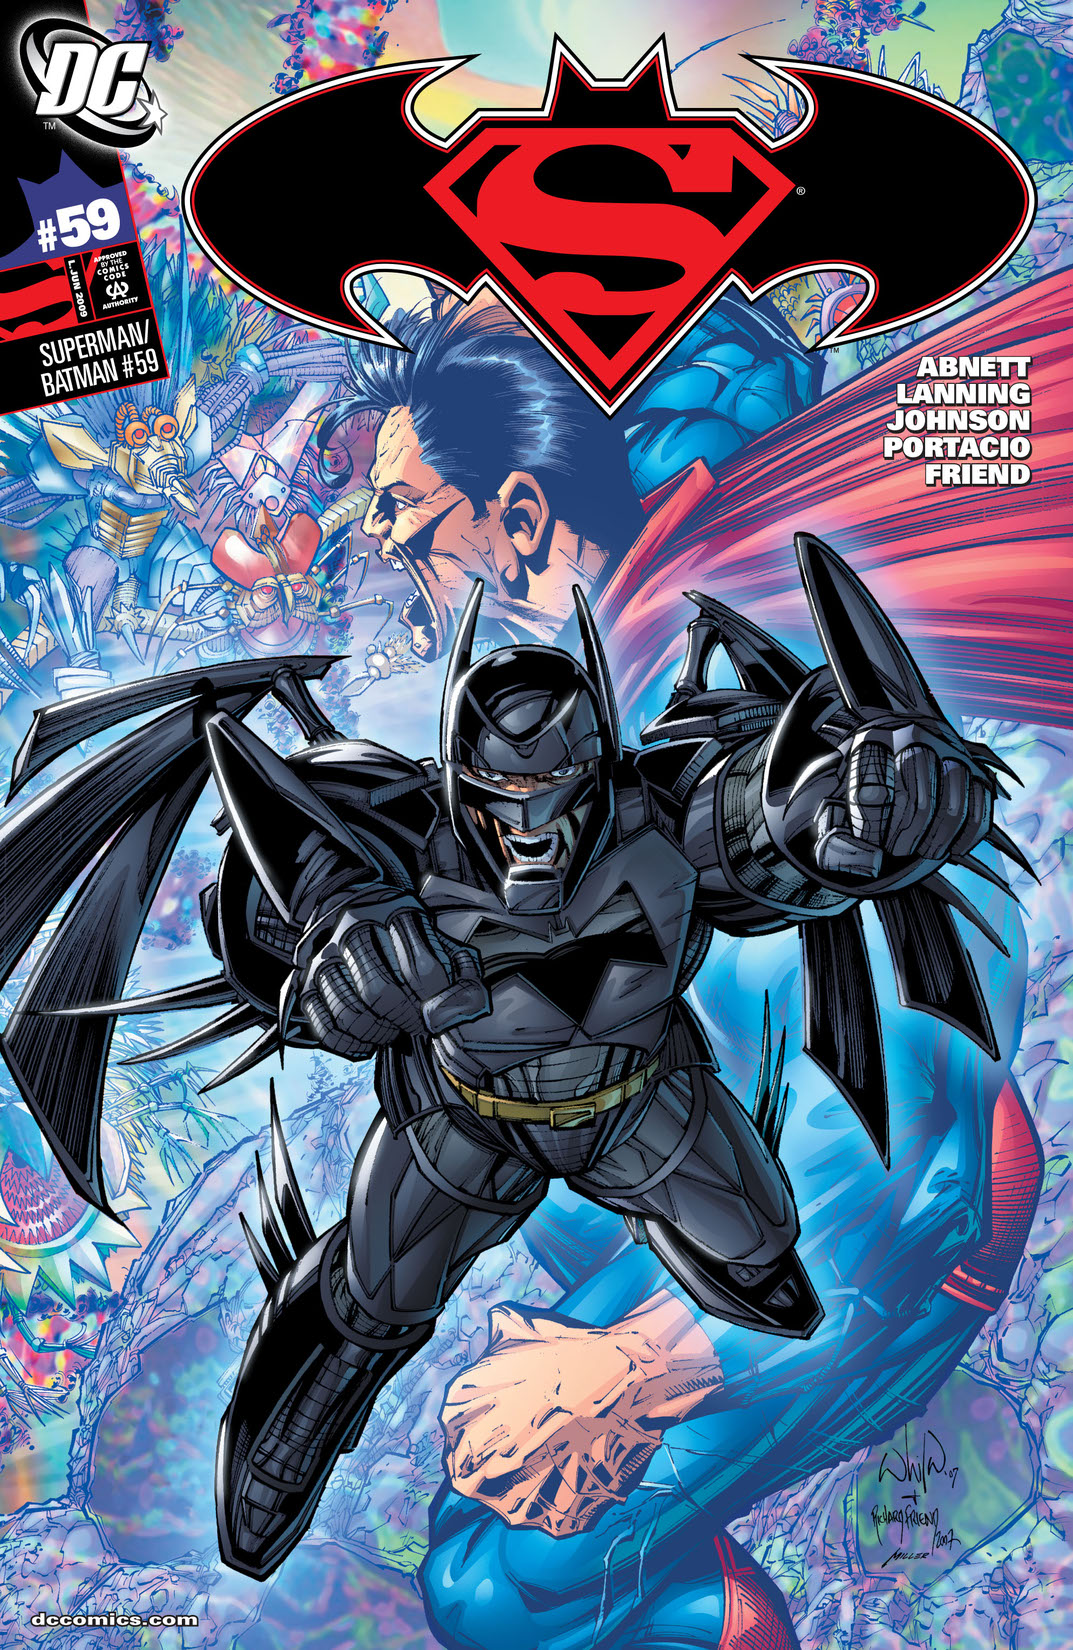 Superman/Batman #59 preview images